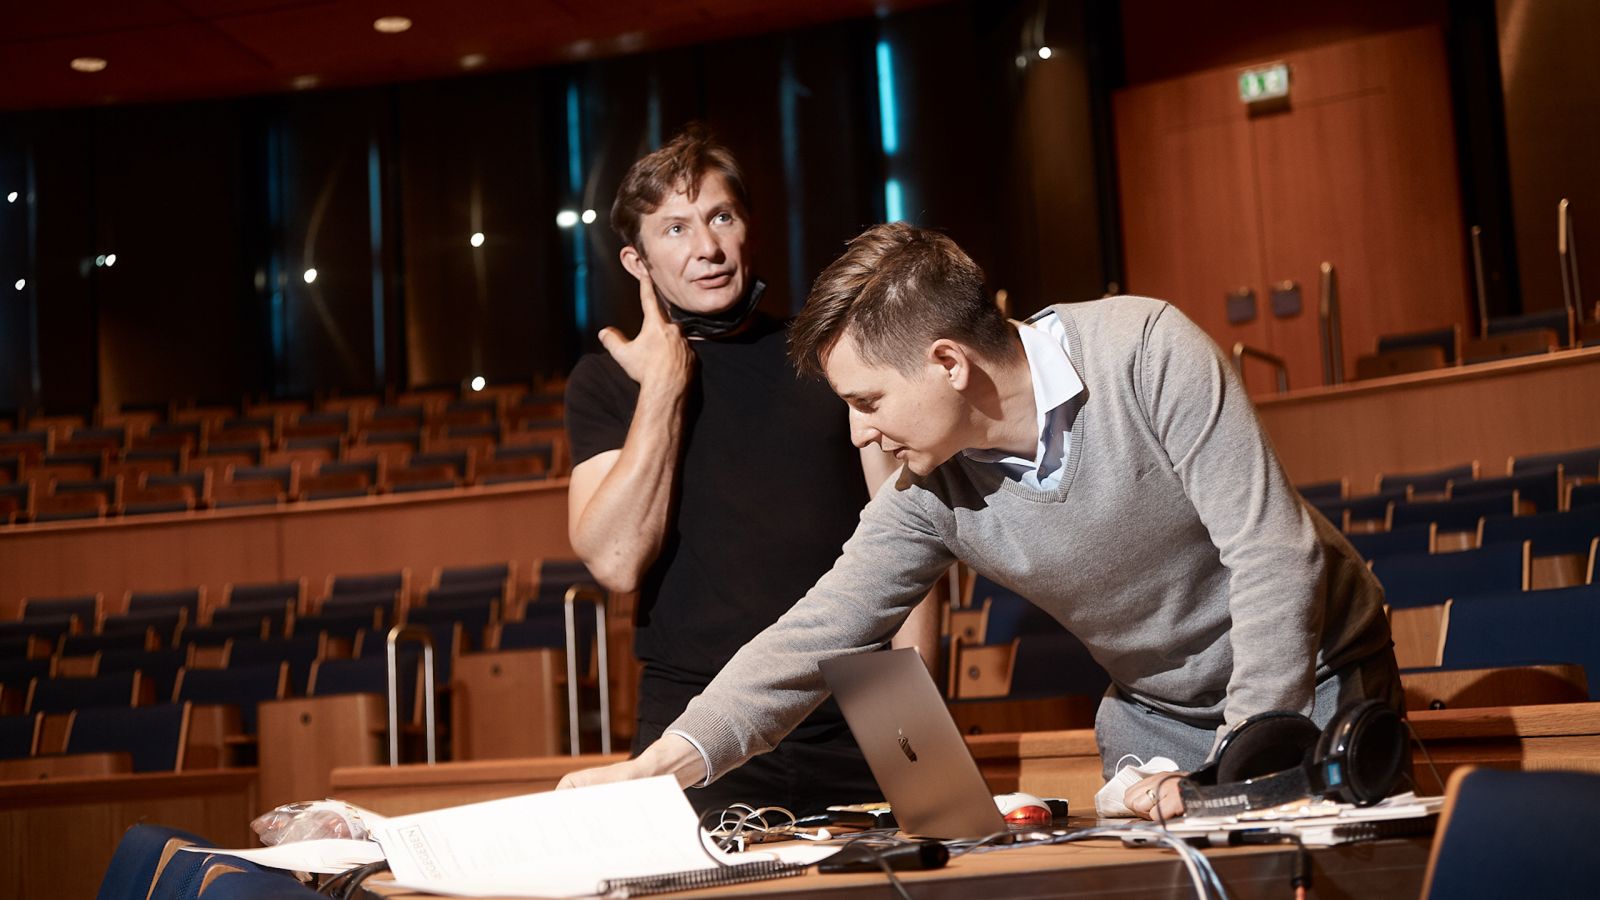 Nick Prokop (rechts im Bild) bei den Probearbeiten zur Inszenierung in der Tonhalle Düsseldorf